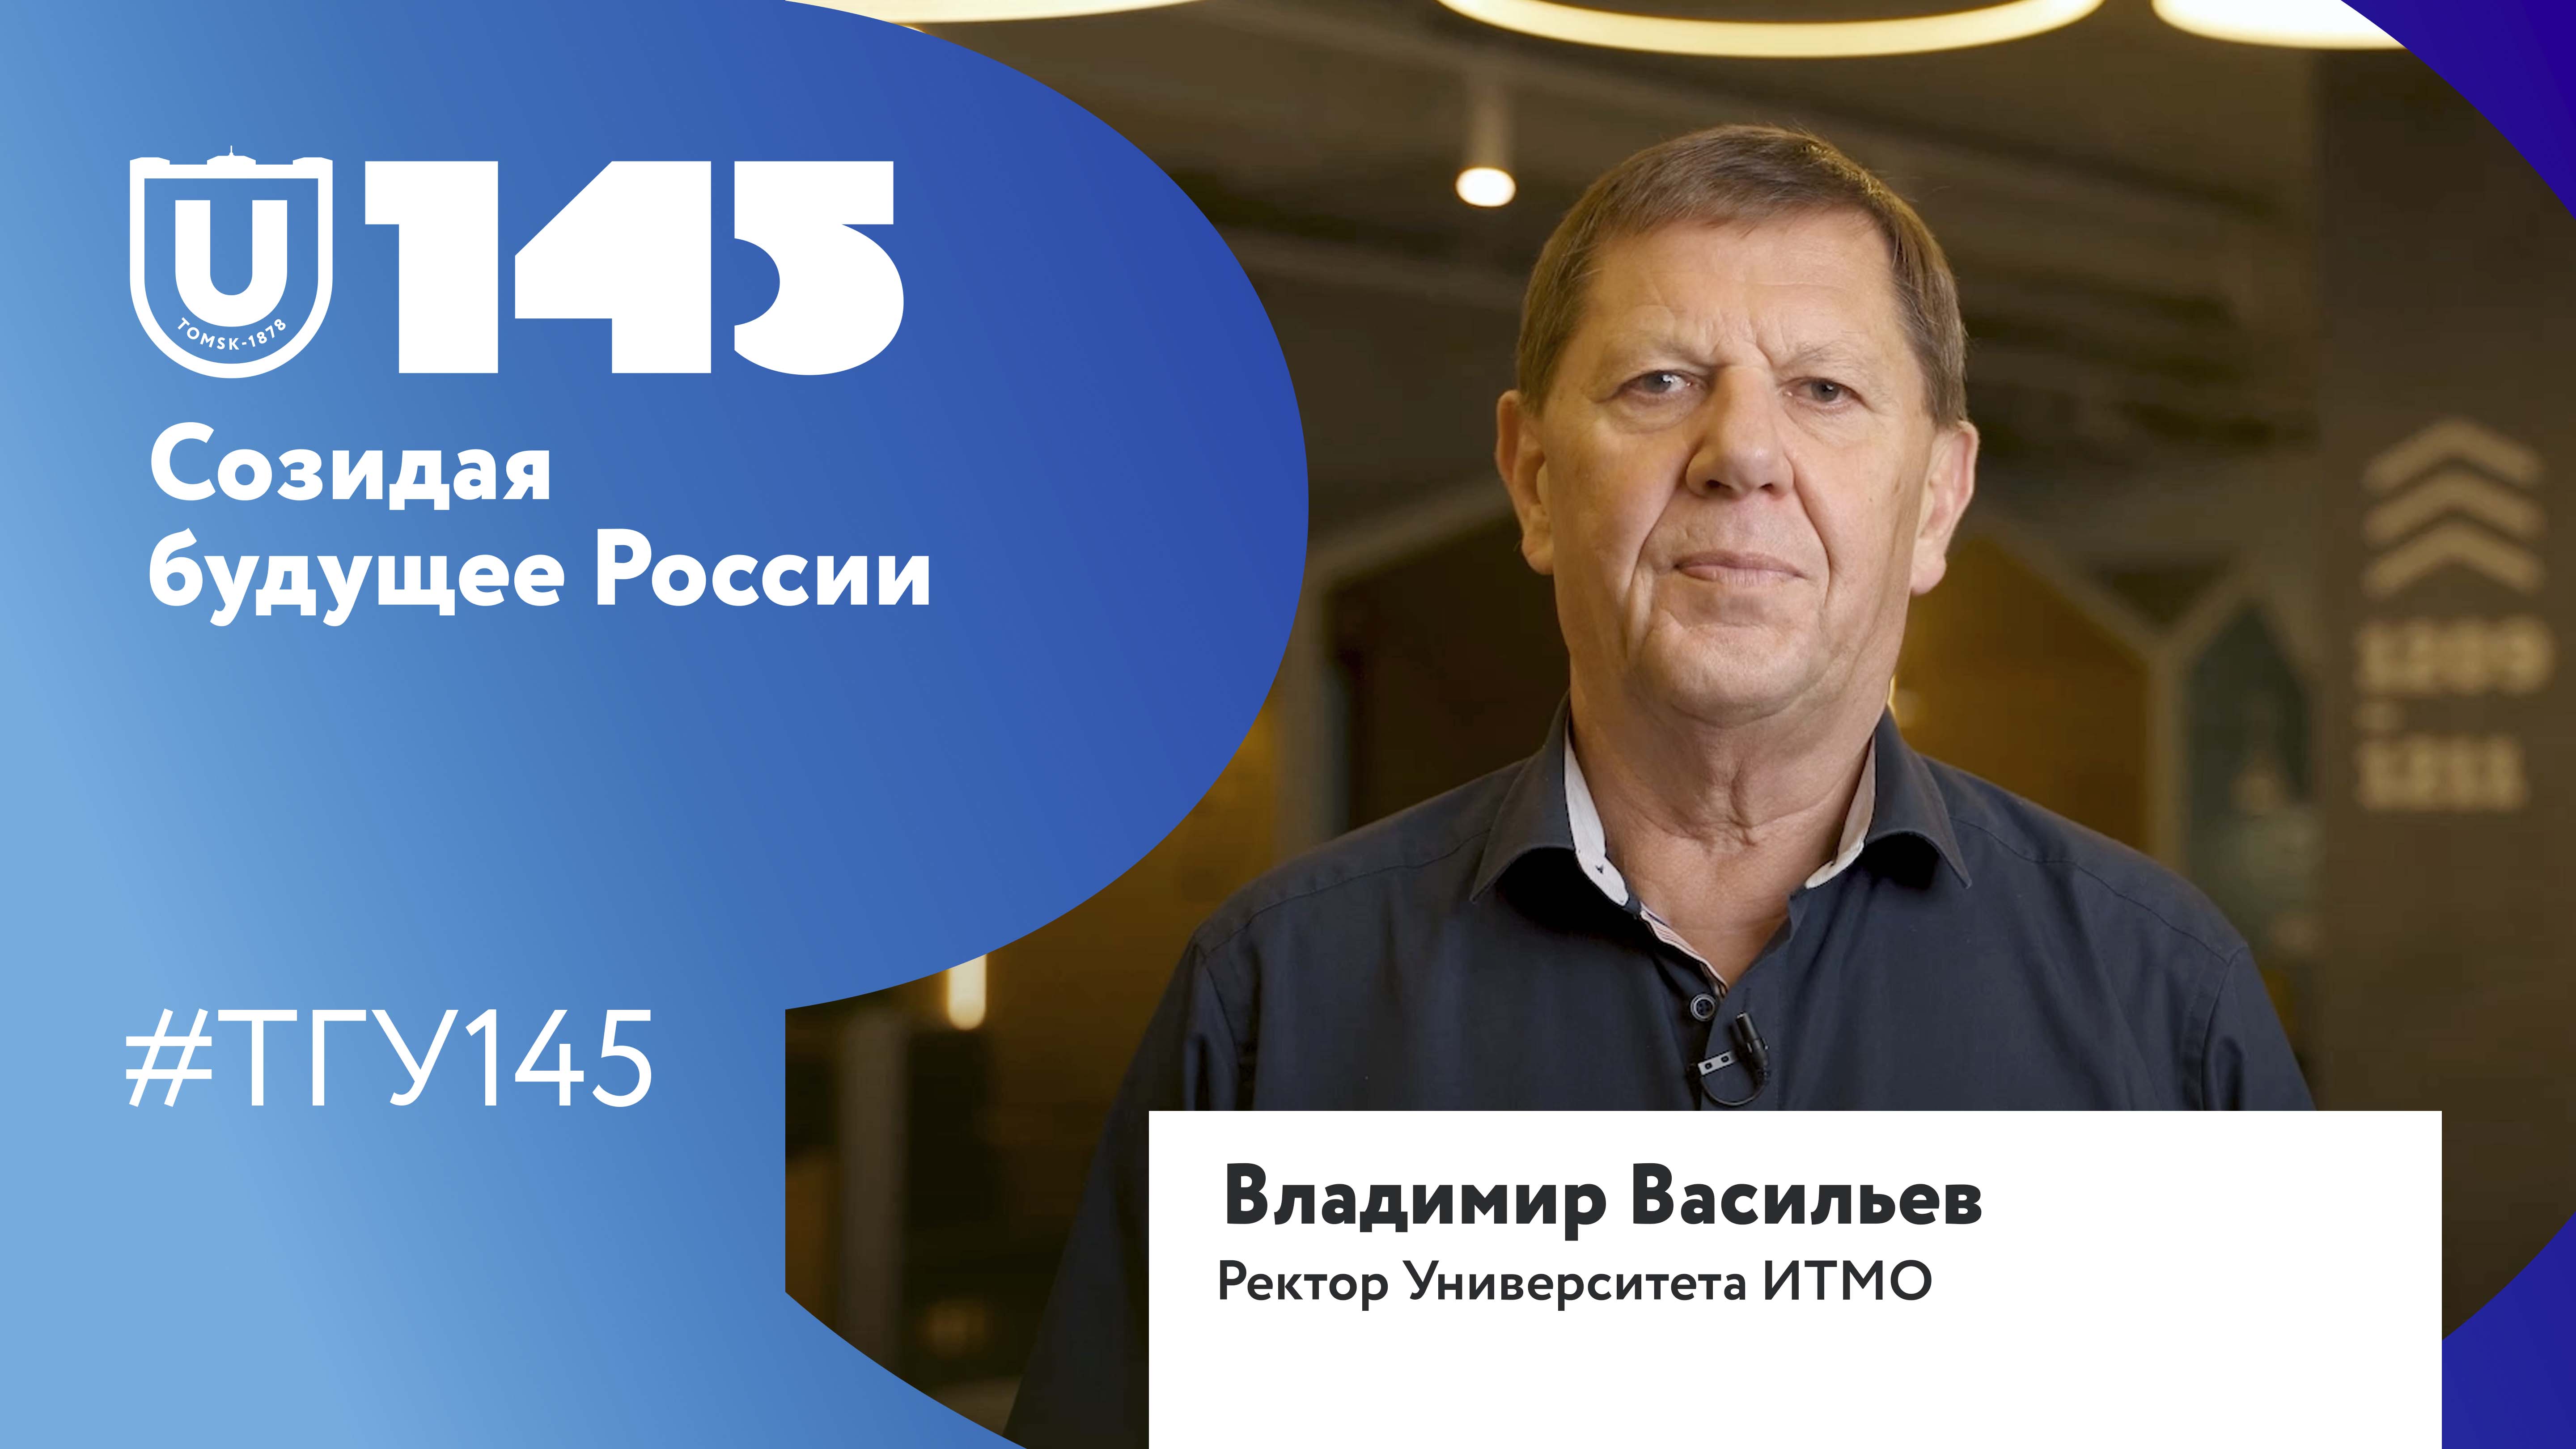 Владимир Васильев поздравляет ТГУ со 145-летием